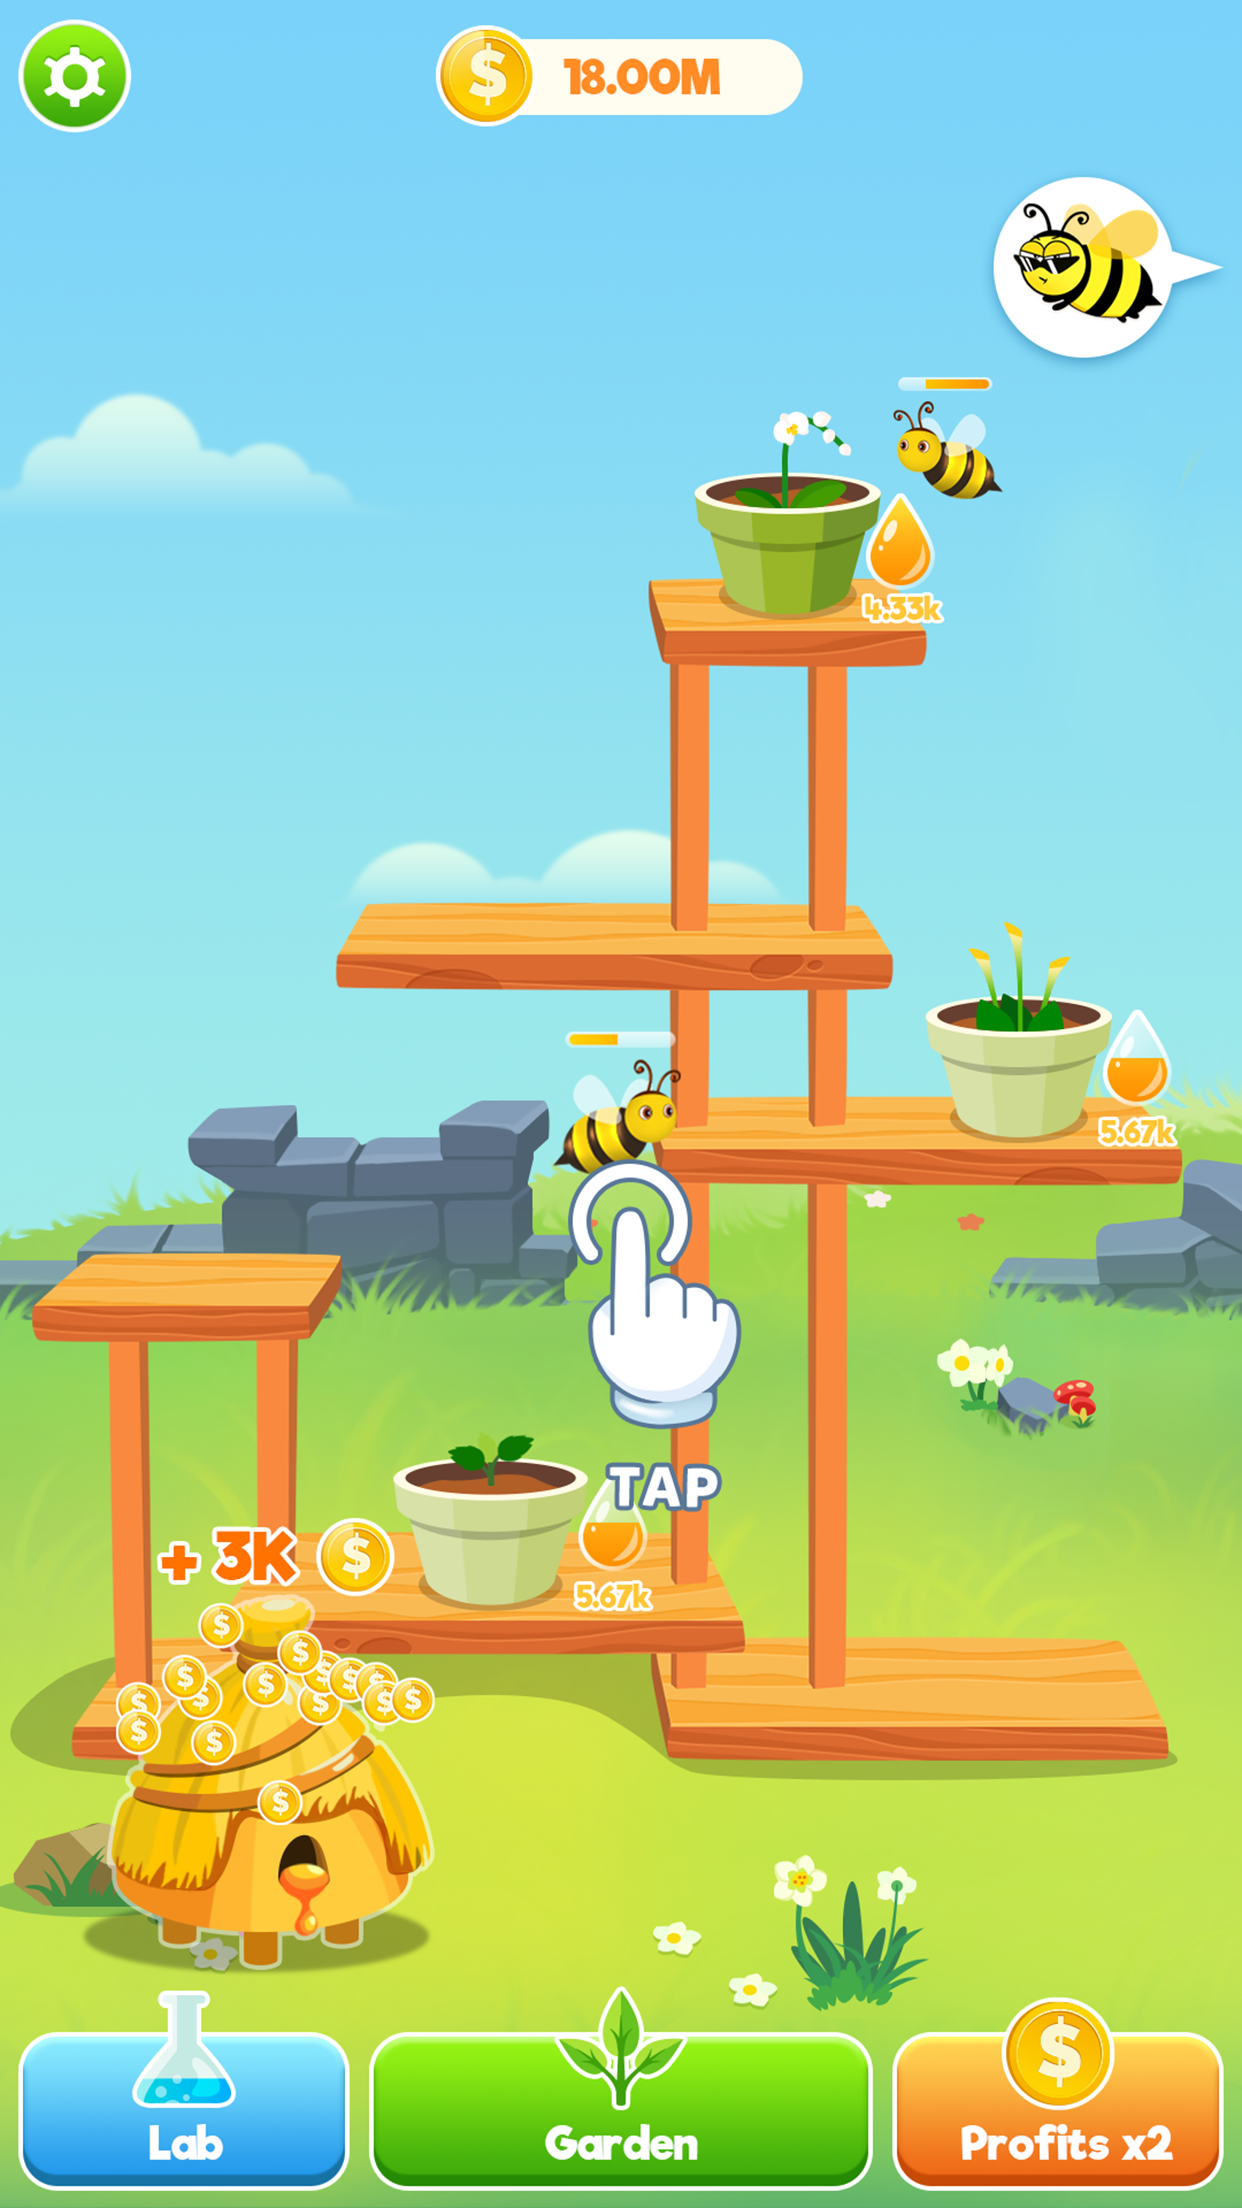 Screenshot 1 of 蜜蜂花園 - 蜂蜜與蜜蜂大亨 1.0.18